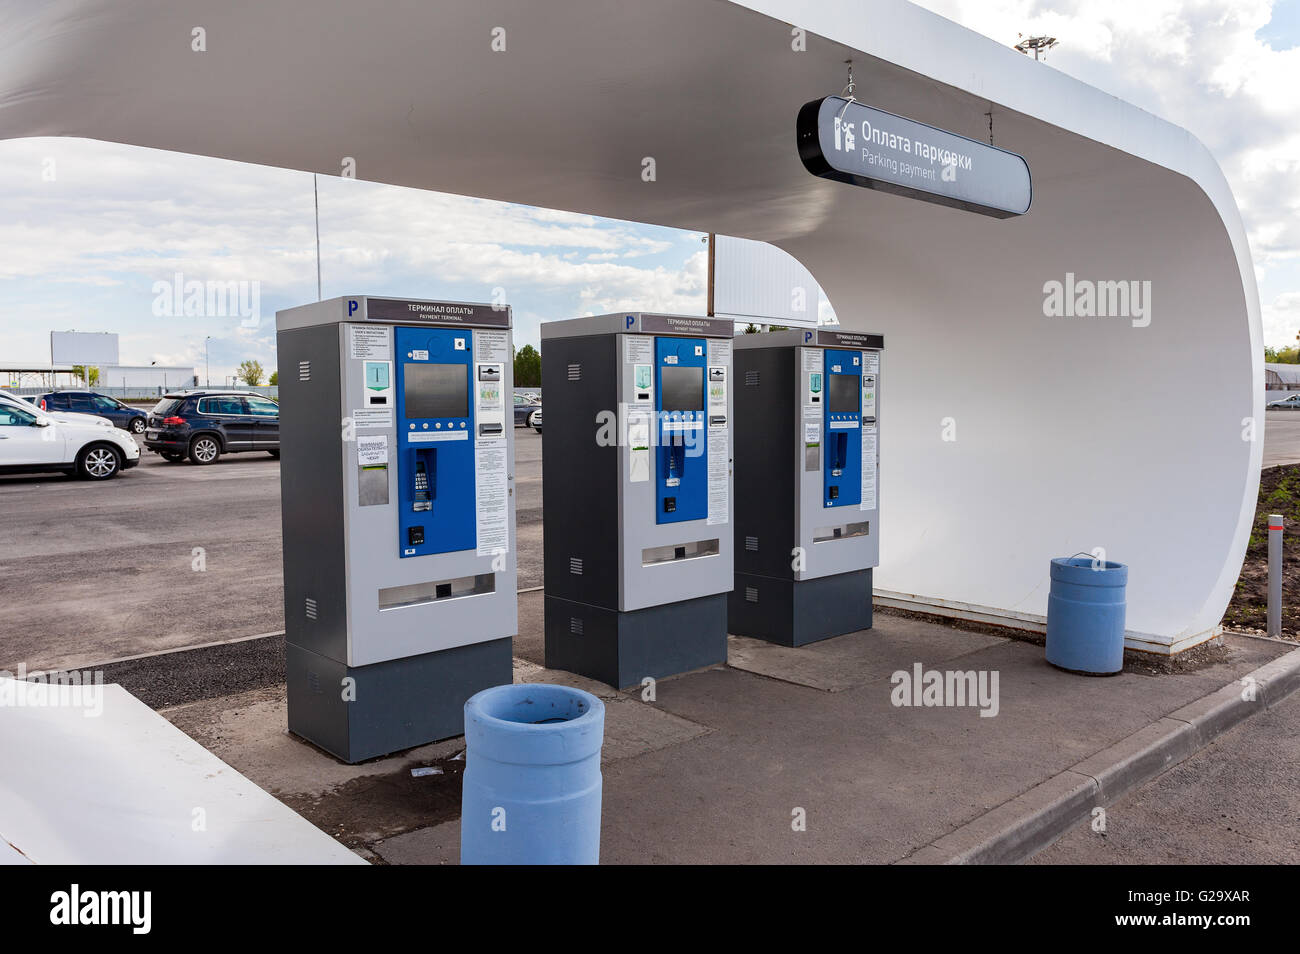 The payment terminal for payment of car parking at the Samara airport Kurumoch Stock Photo